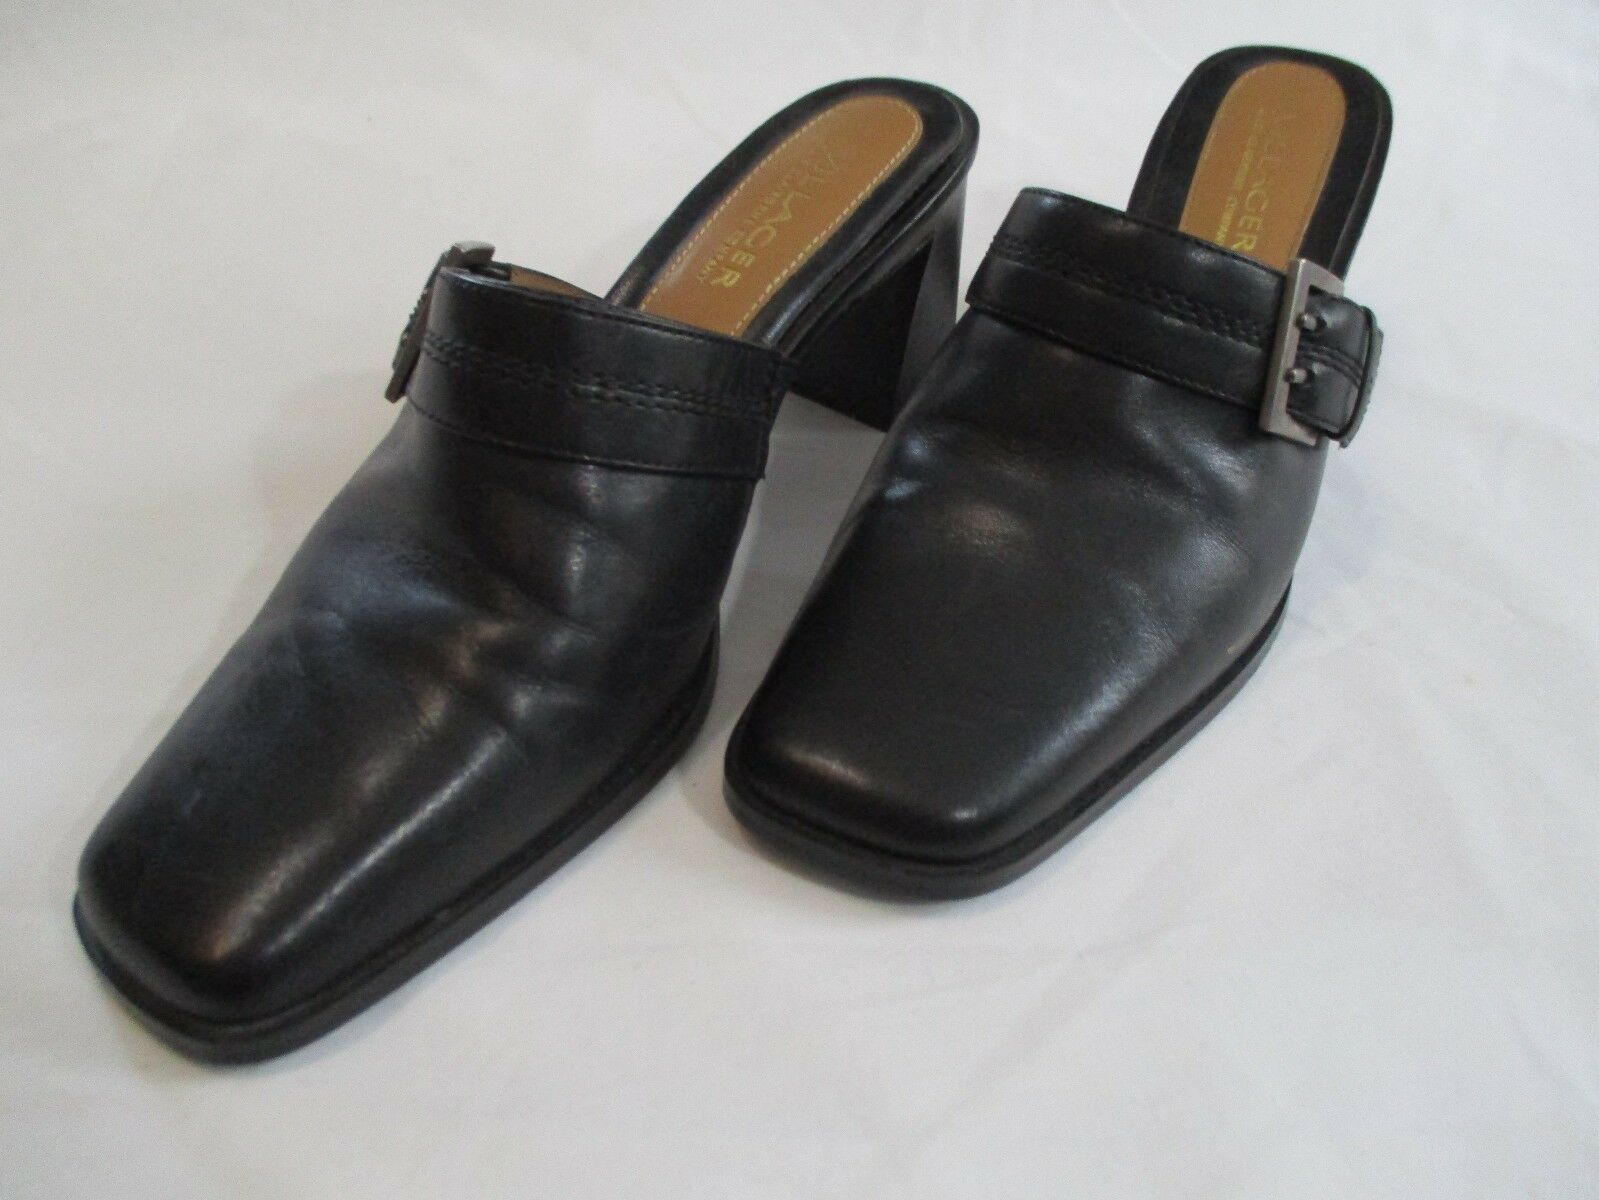 villager shoes liz claiborne company